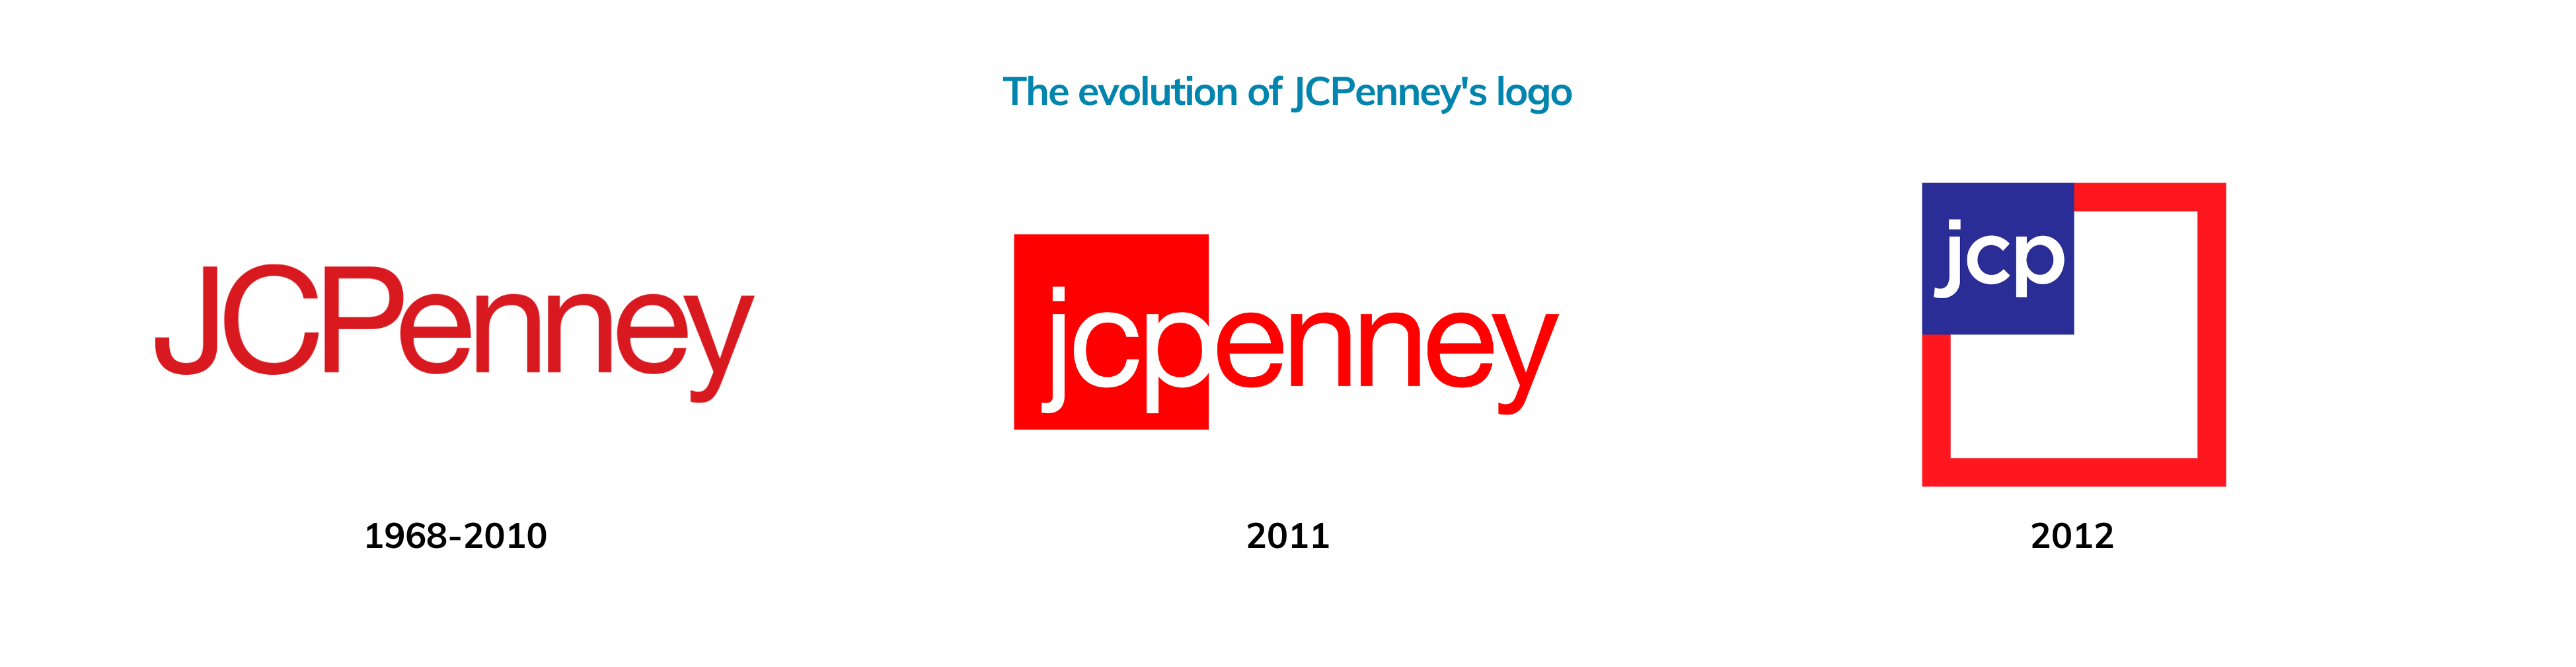 jcpenney logo evolution